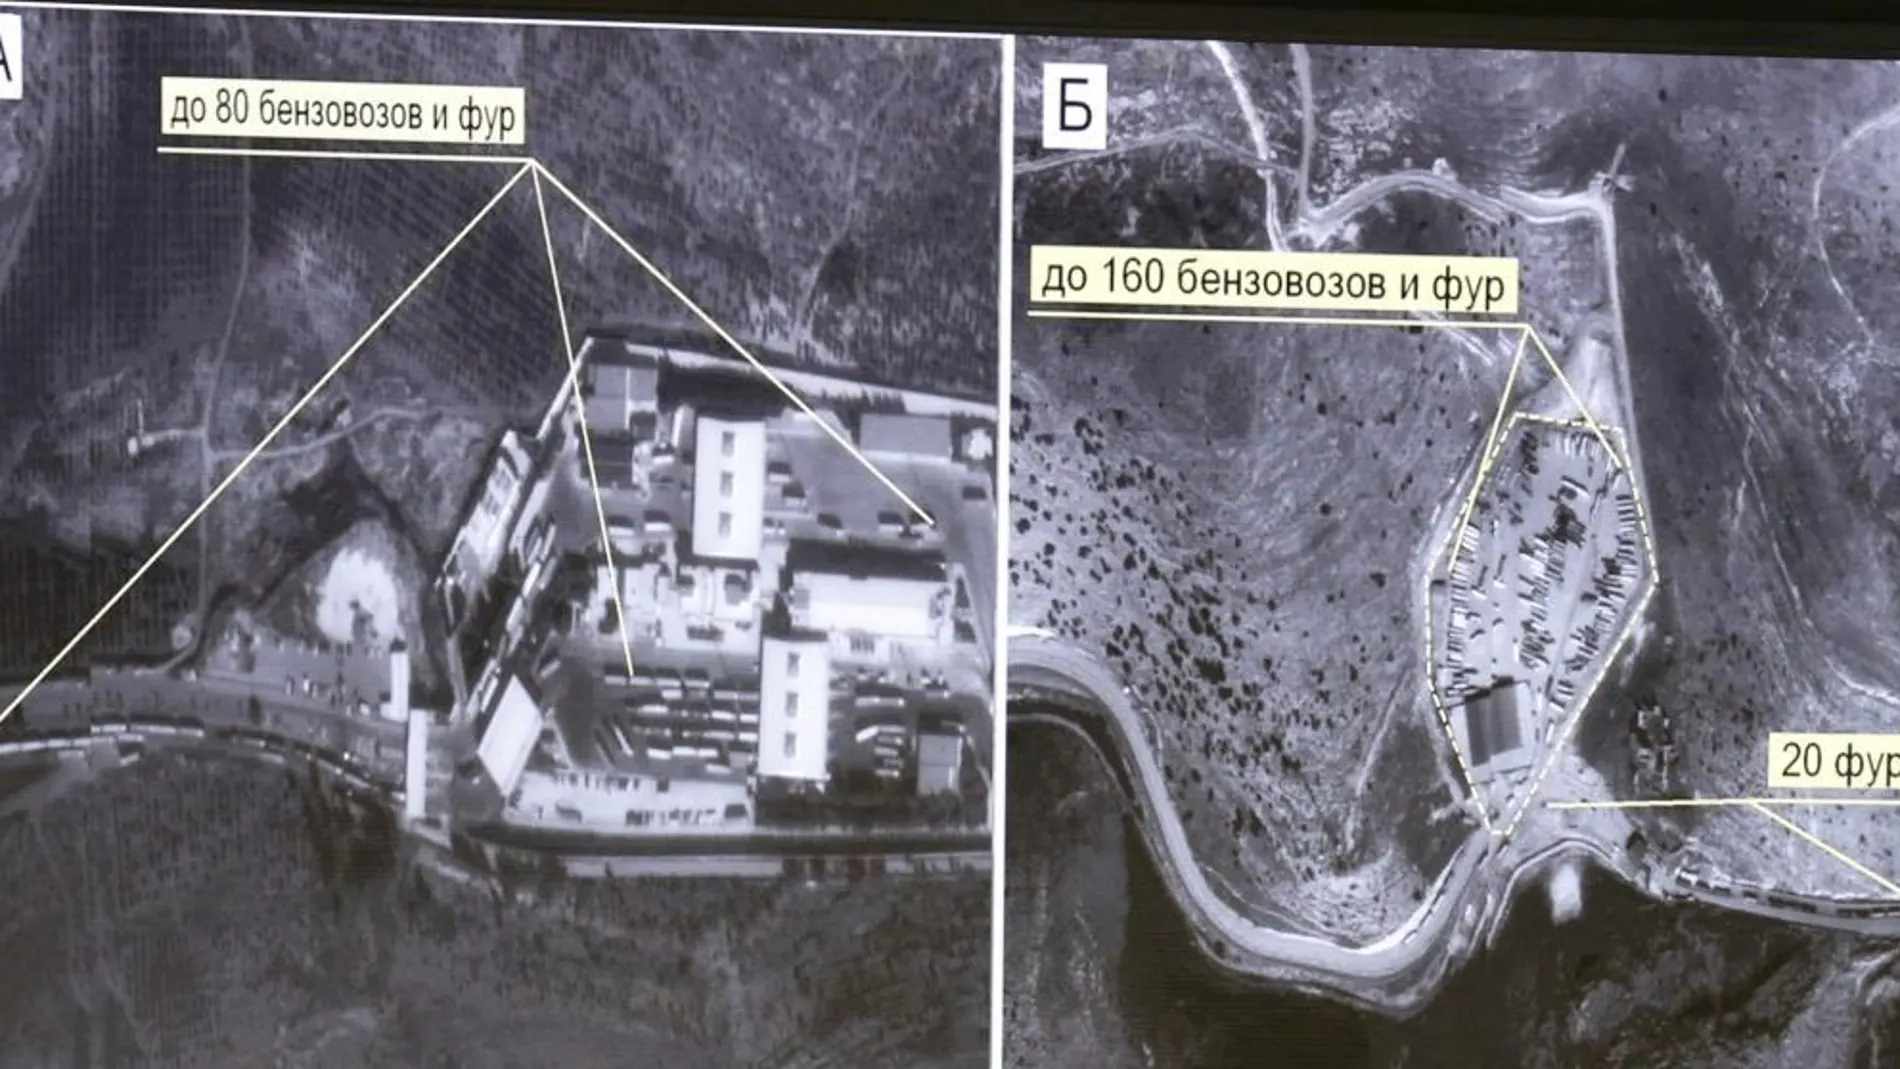 Imagen difundida por el Ministerio de Defensa ruso, que dice haber descubierto tres rutas por las que el petróleo robado en Siria e Irak es transportado a territorio turco